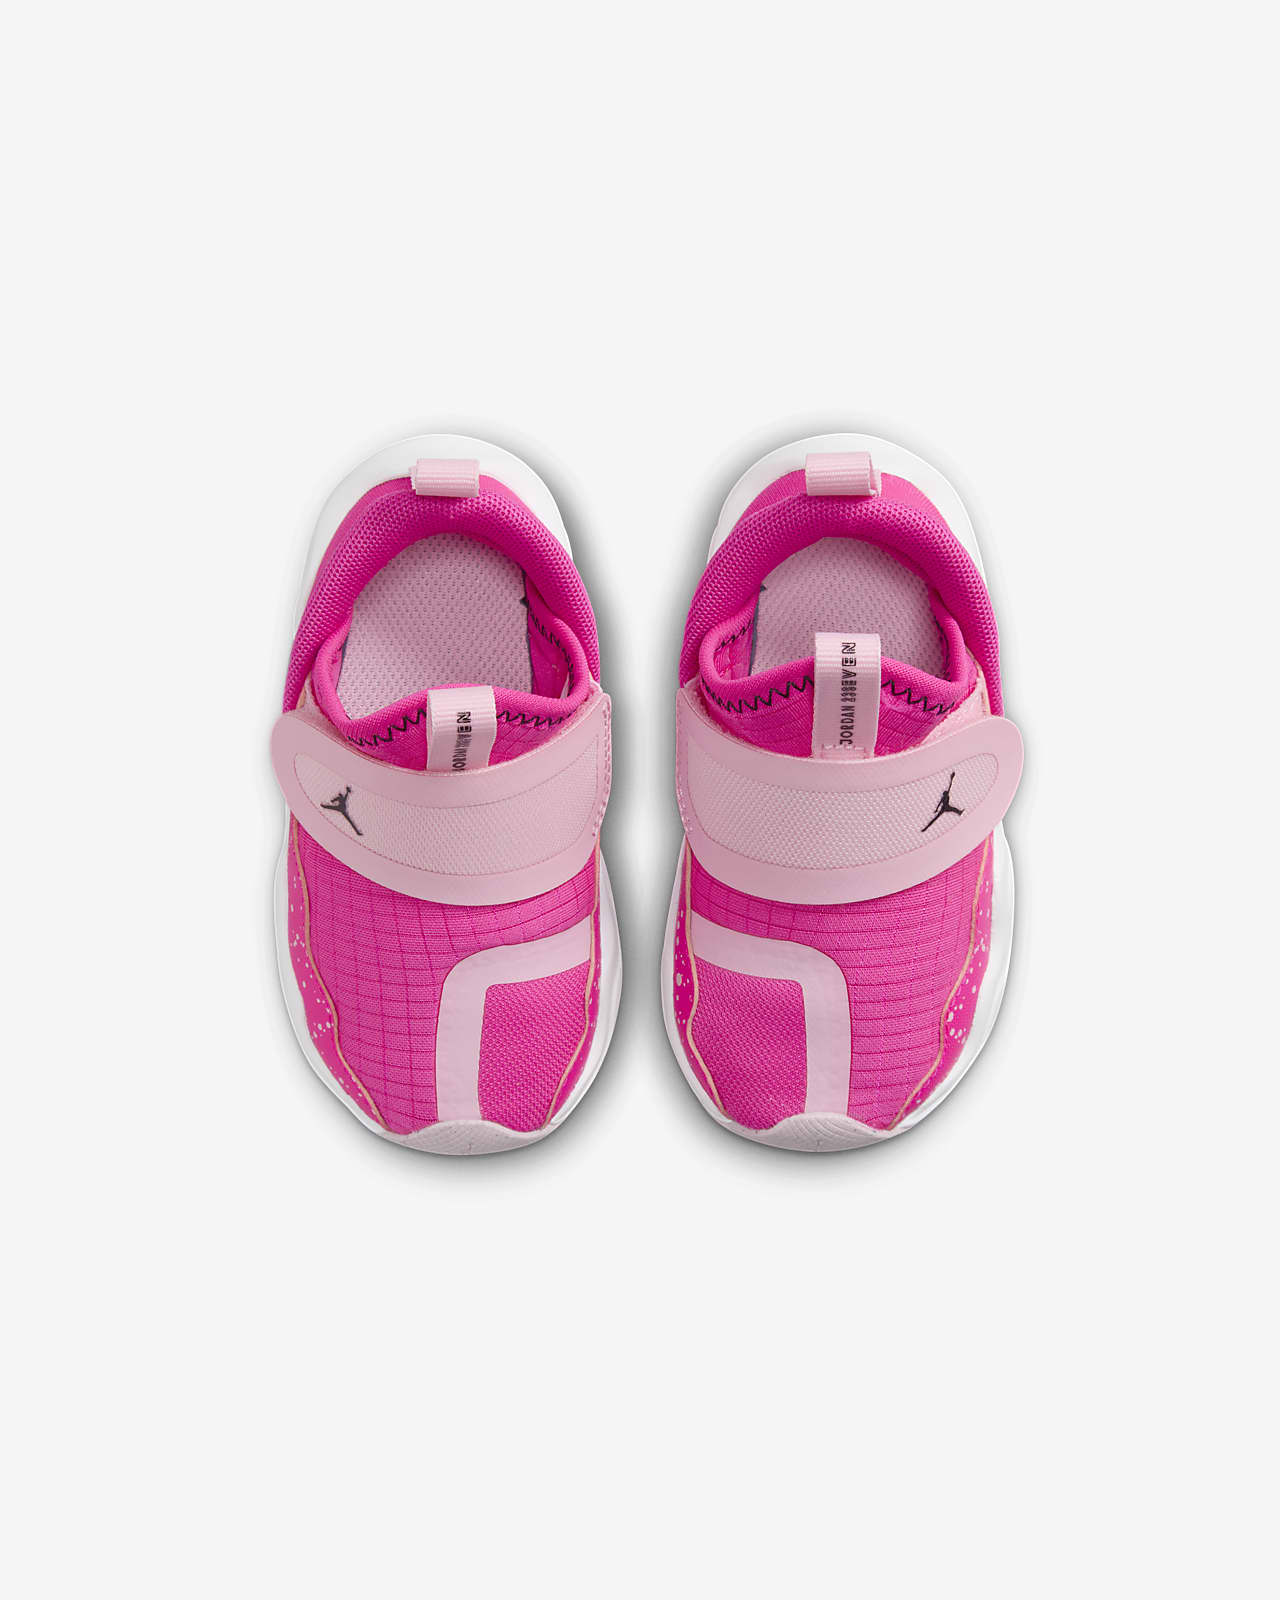 Vlot De lucht molen Jordan 23/7 Baby/Toddler Shoes. Nike ID